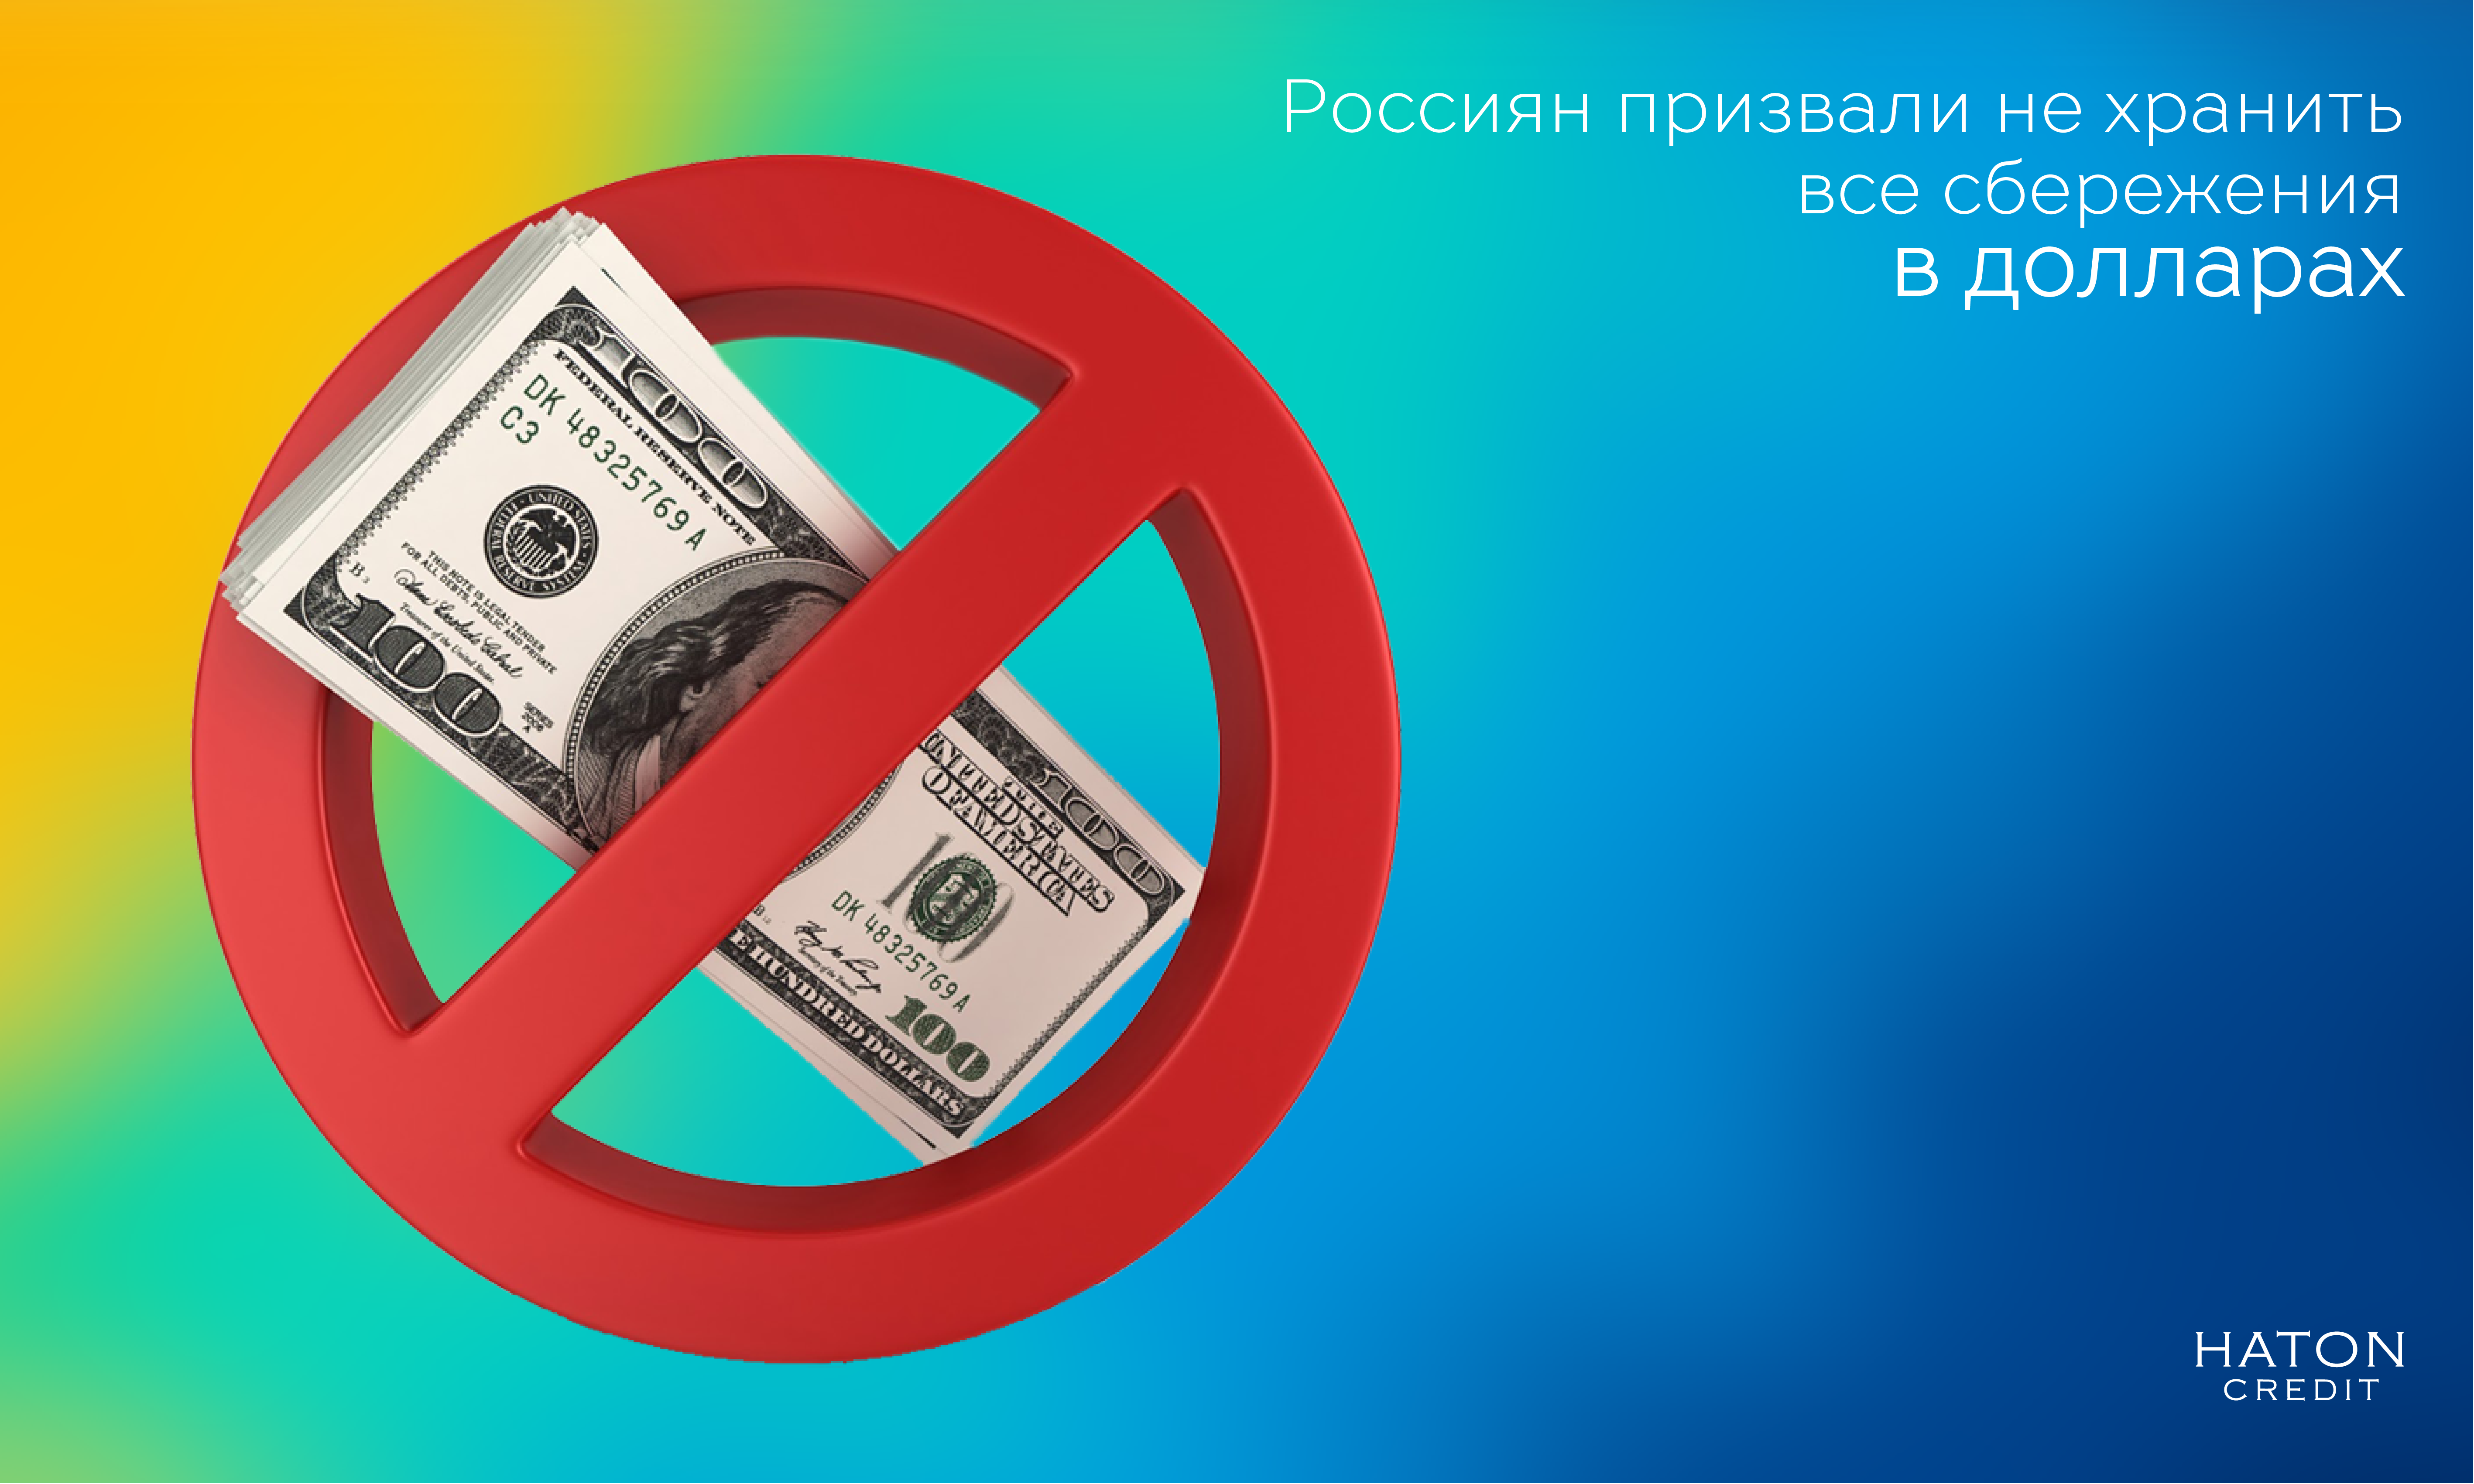 Россиян призвали не хранить все сбережения в долларах